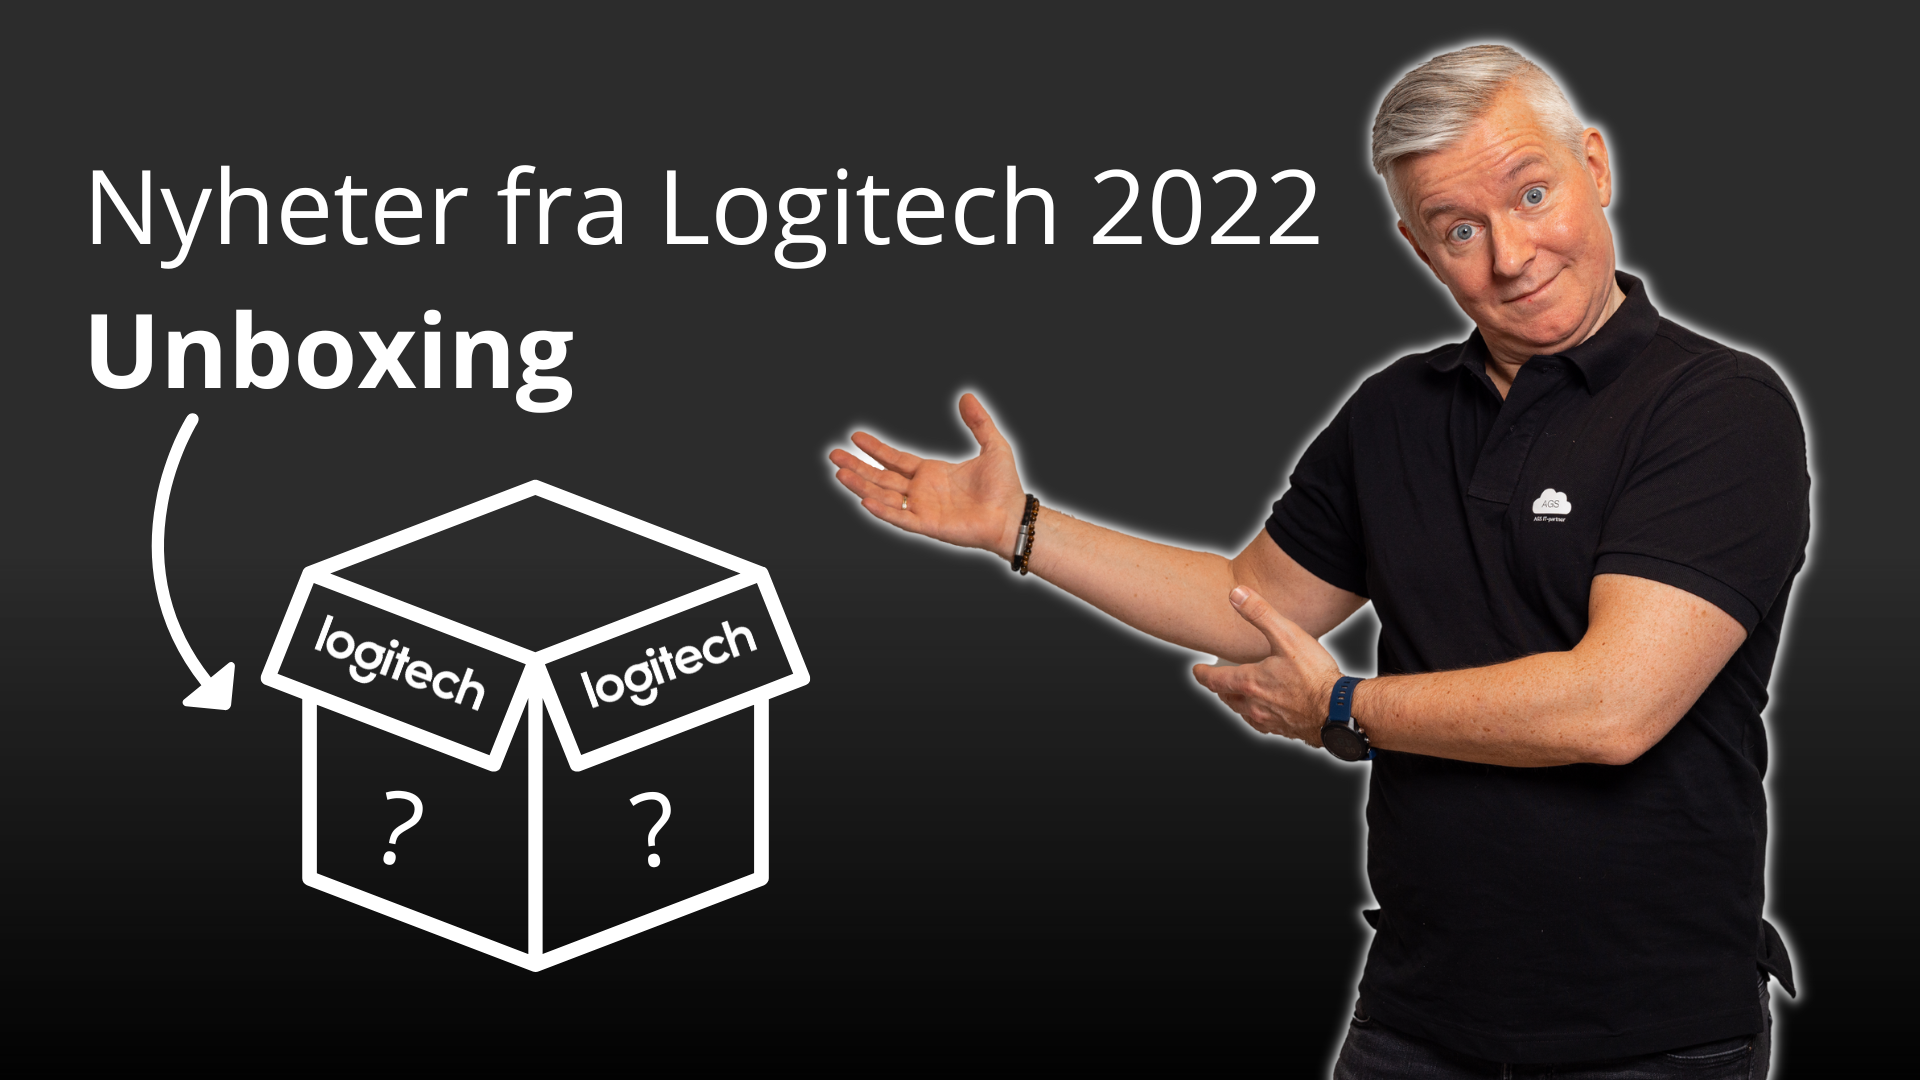 Nyheter fra Logitech 2022 - Unboxing